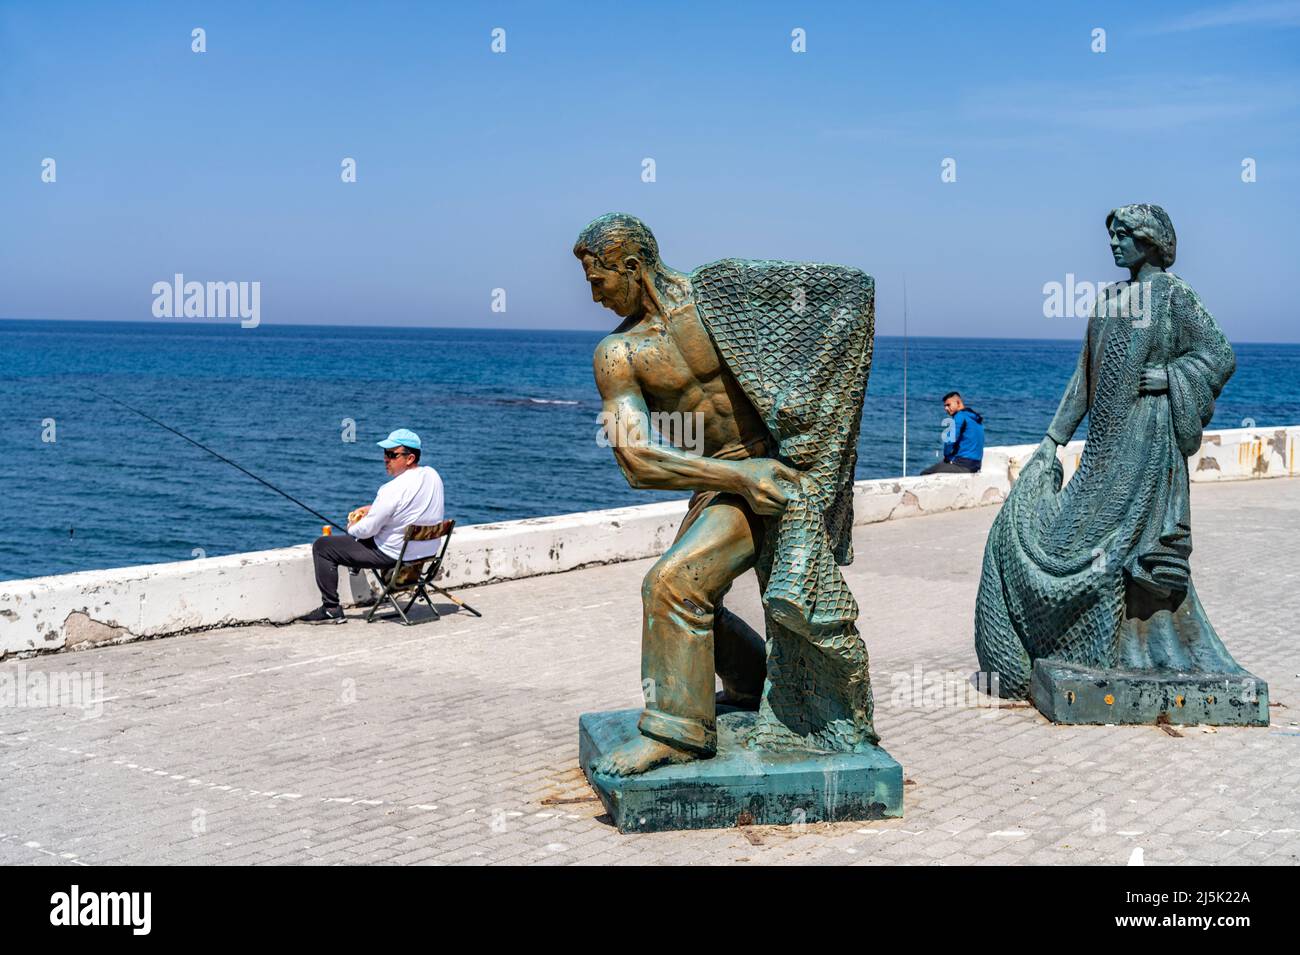 Skulptur Fischer an der Promenade in Kyrenia oder Girne, Türkische Republik Nordzypern, Europa | Escultura de pescadores en el paseo marítimo de Kyrenia or Foto de stock